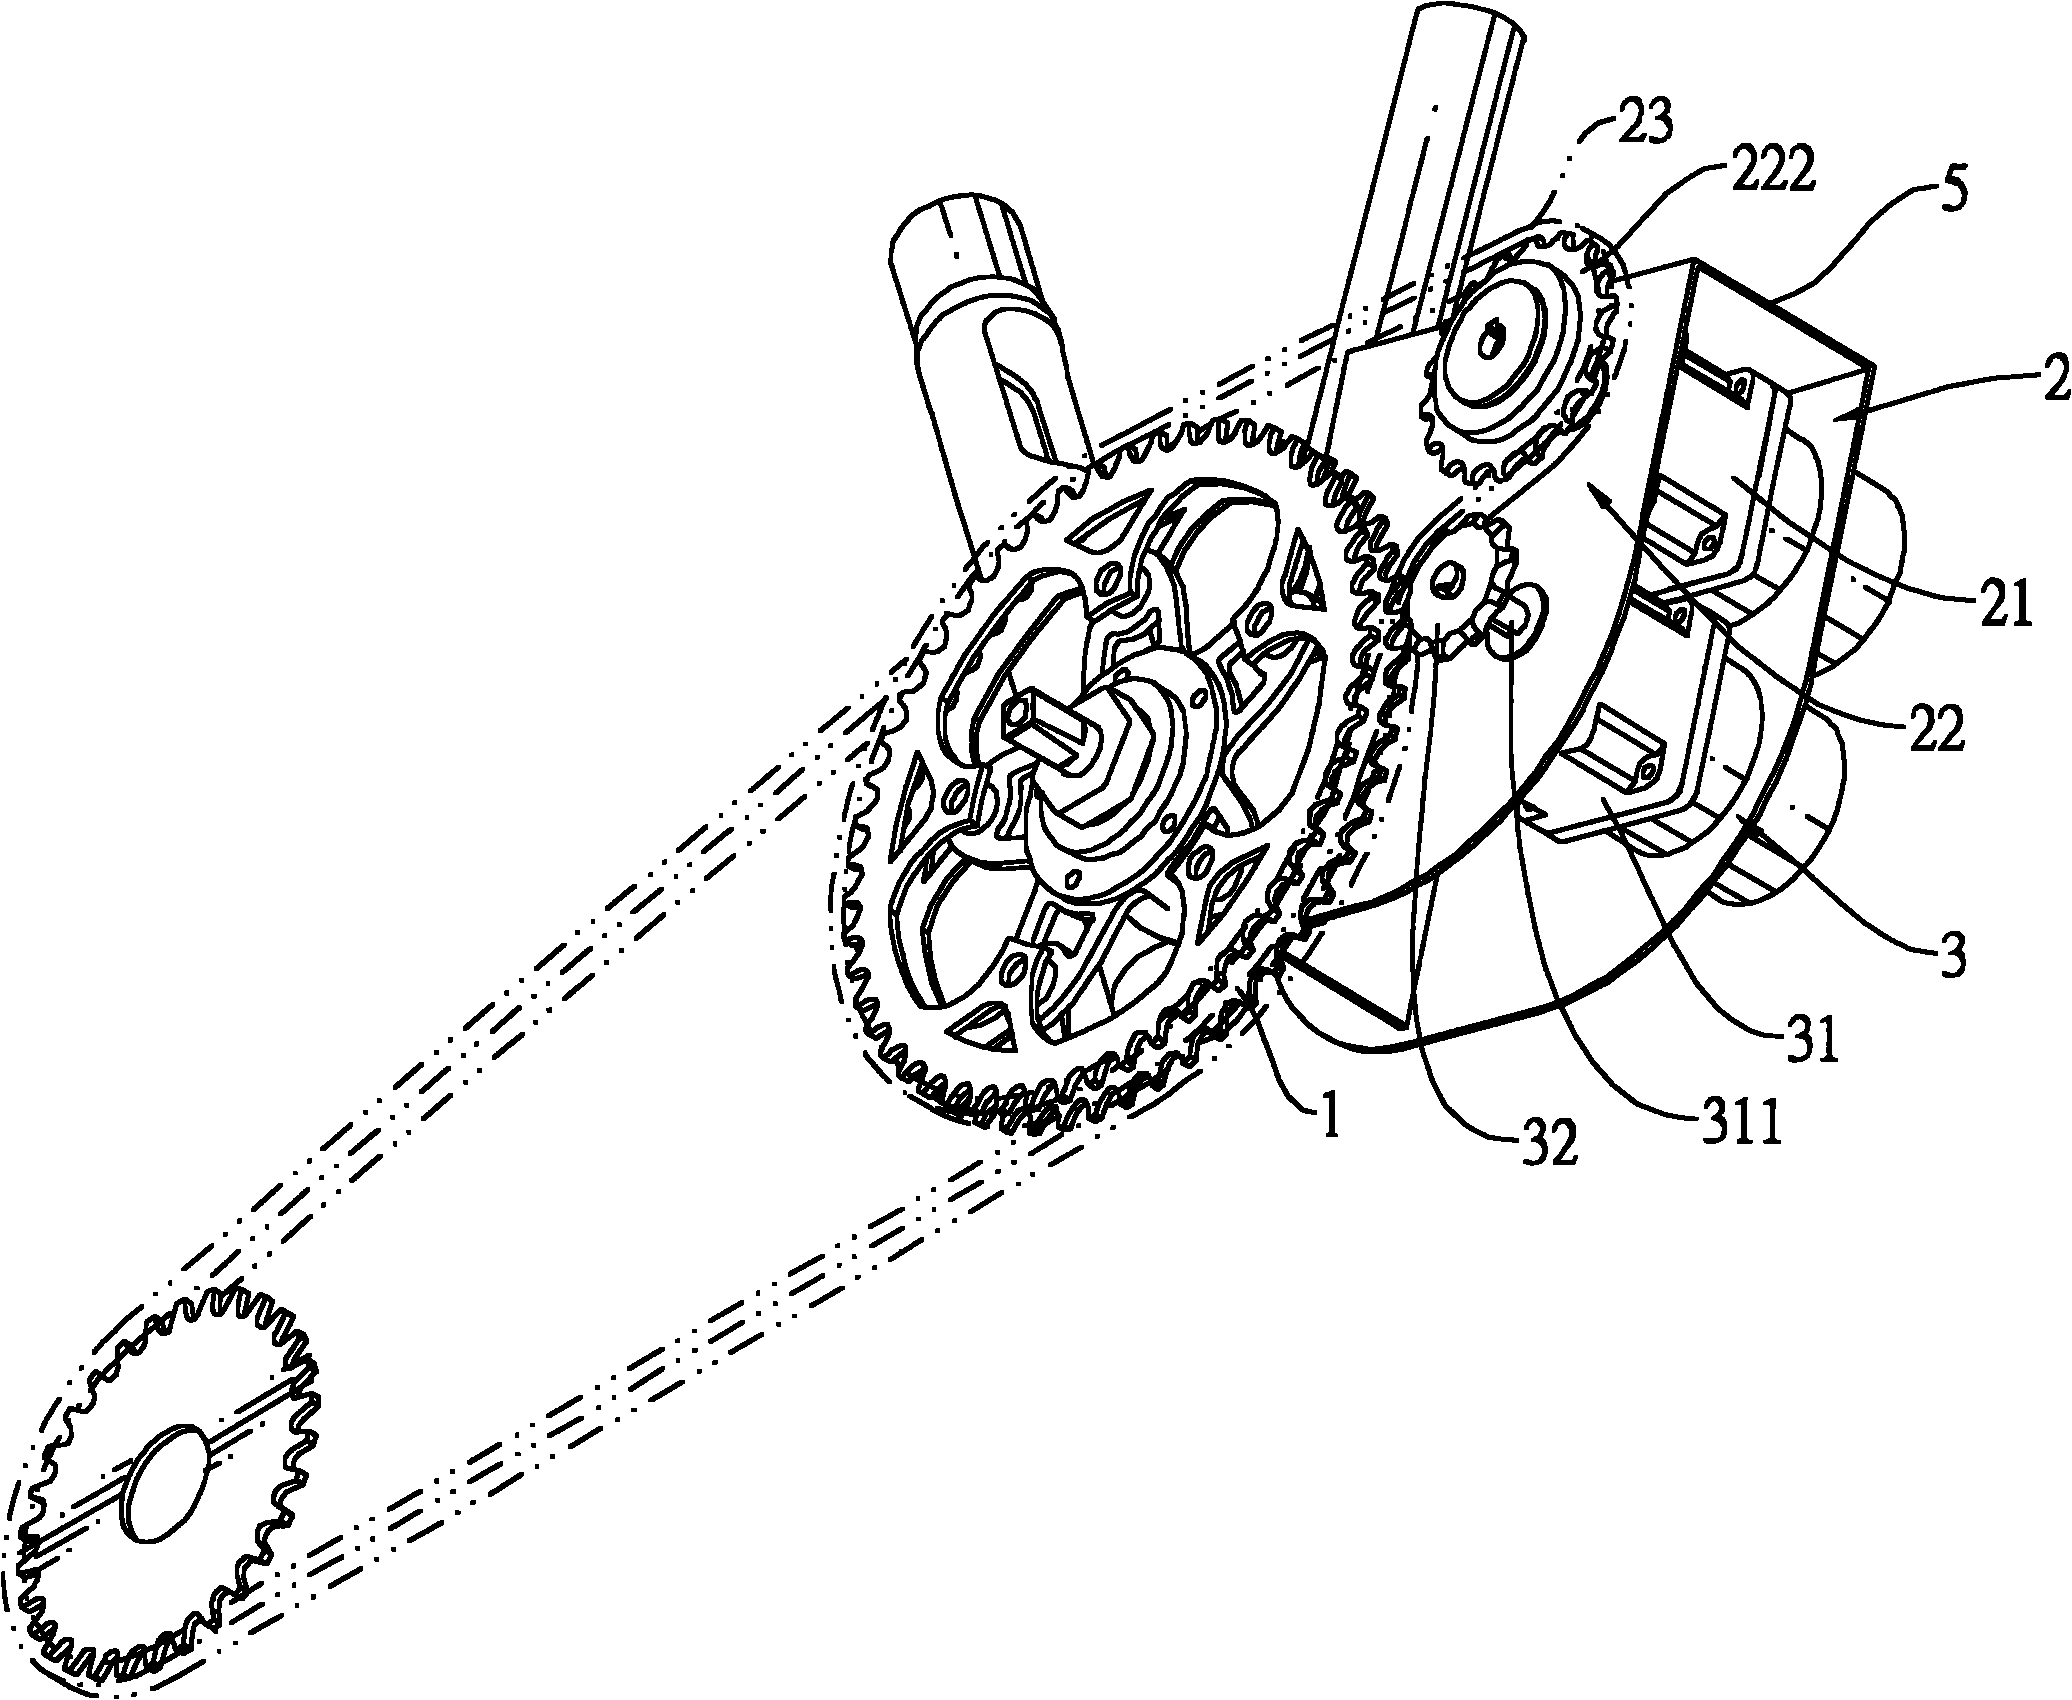 自行车连接脚踏板的一转轴上的大链轮,一电力驱动装置及一发电机装置